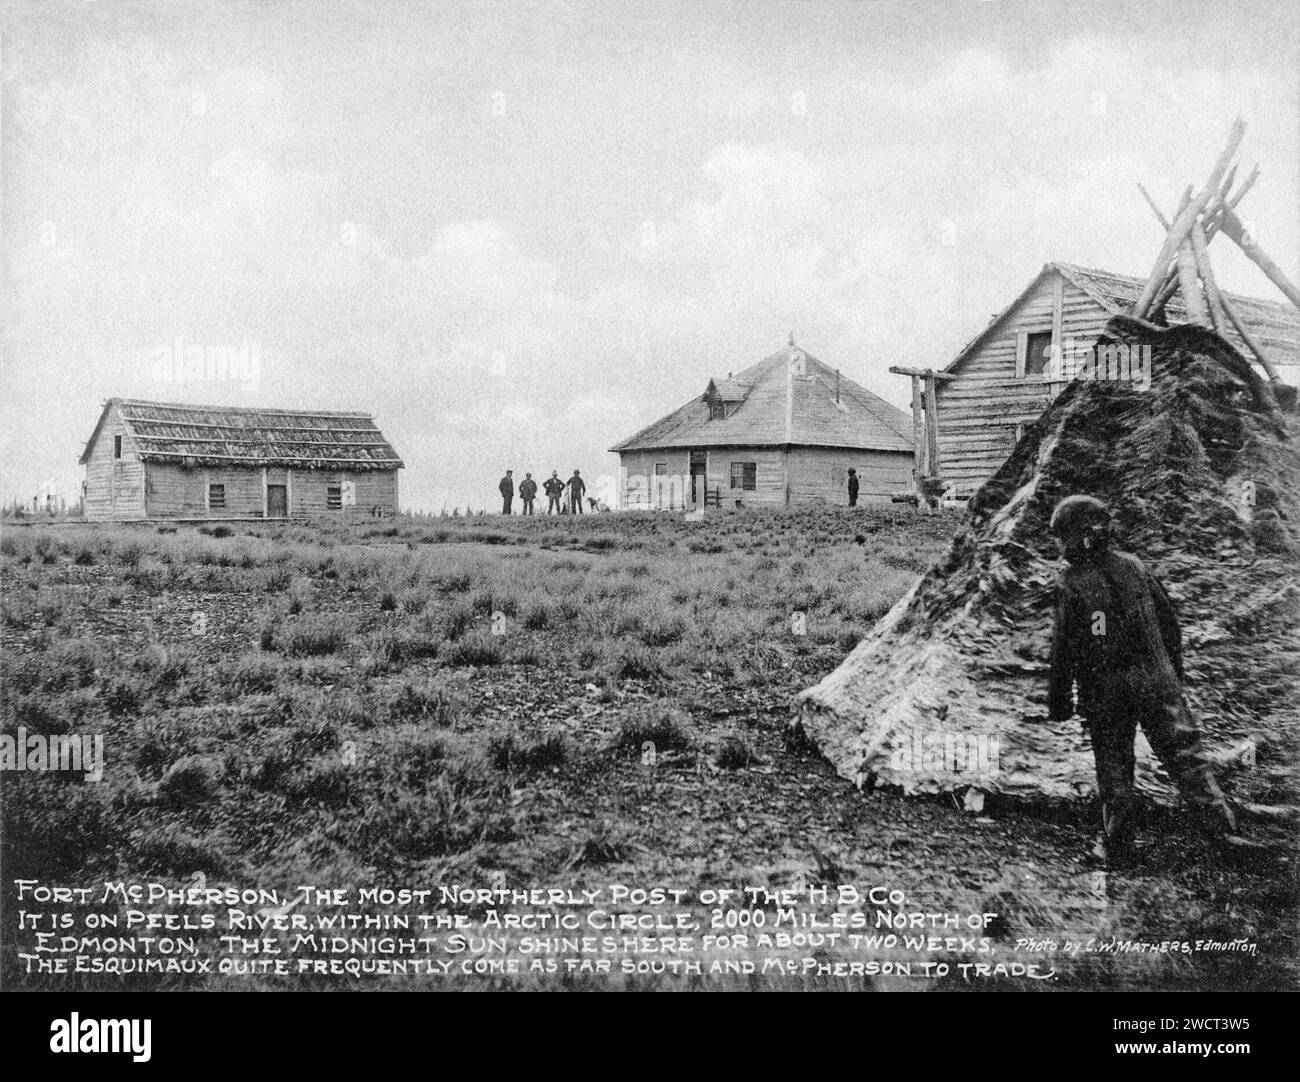 Une photographie de 1901 de fort McPherson, un poste de la Compagnie de la Baie d’Hudson sur la rivière Peel, dans les Territoires du Nord-Ouest, prise par C W Mathers lors d’une expédition dans le Grand Nord du Canada et publiée dans son livre « The Far North ». Mathers a sous-titré cette photographie : fort McPherson, le poste le plus au nord de la H.B.Co C'est sur la rivière Peel, dans le cercle arctique, à 2000 milles au nord d'Edmonton, que le soleil de minuit brille ici pendant environ deux semaines. Les Esquimaux [Inuits] viennent assez souvent aussi loin au sud et [comme] McPherson pour le commerce. Banque D'Images